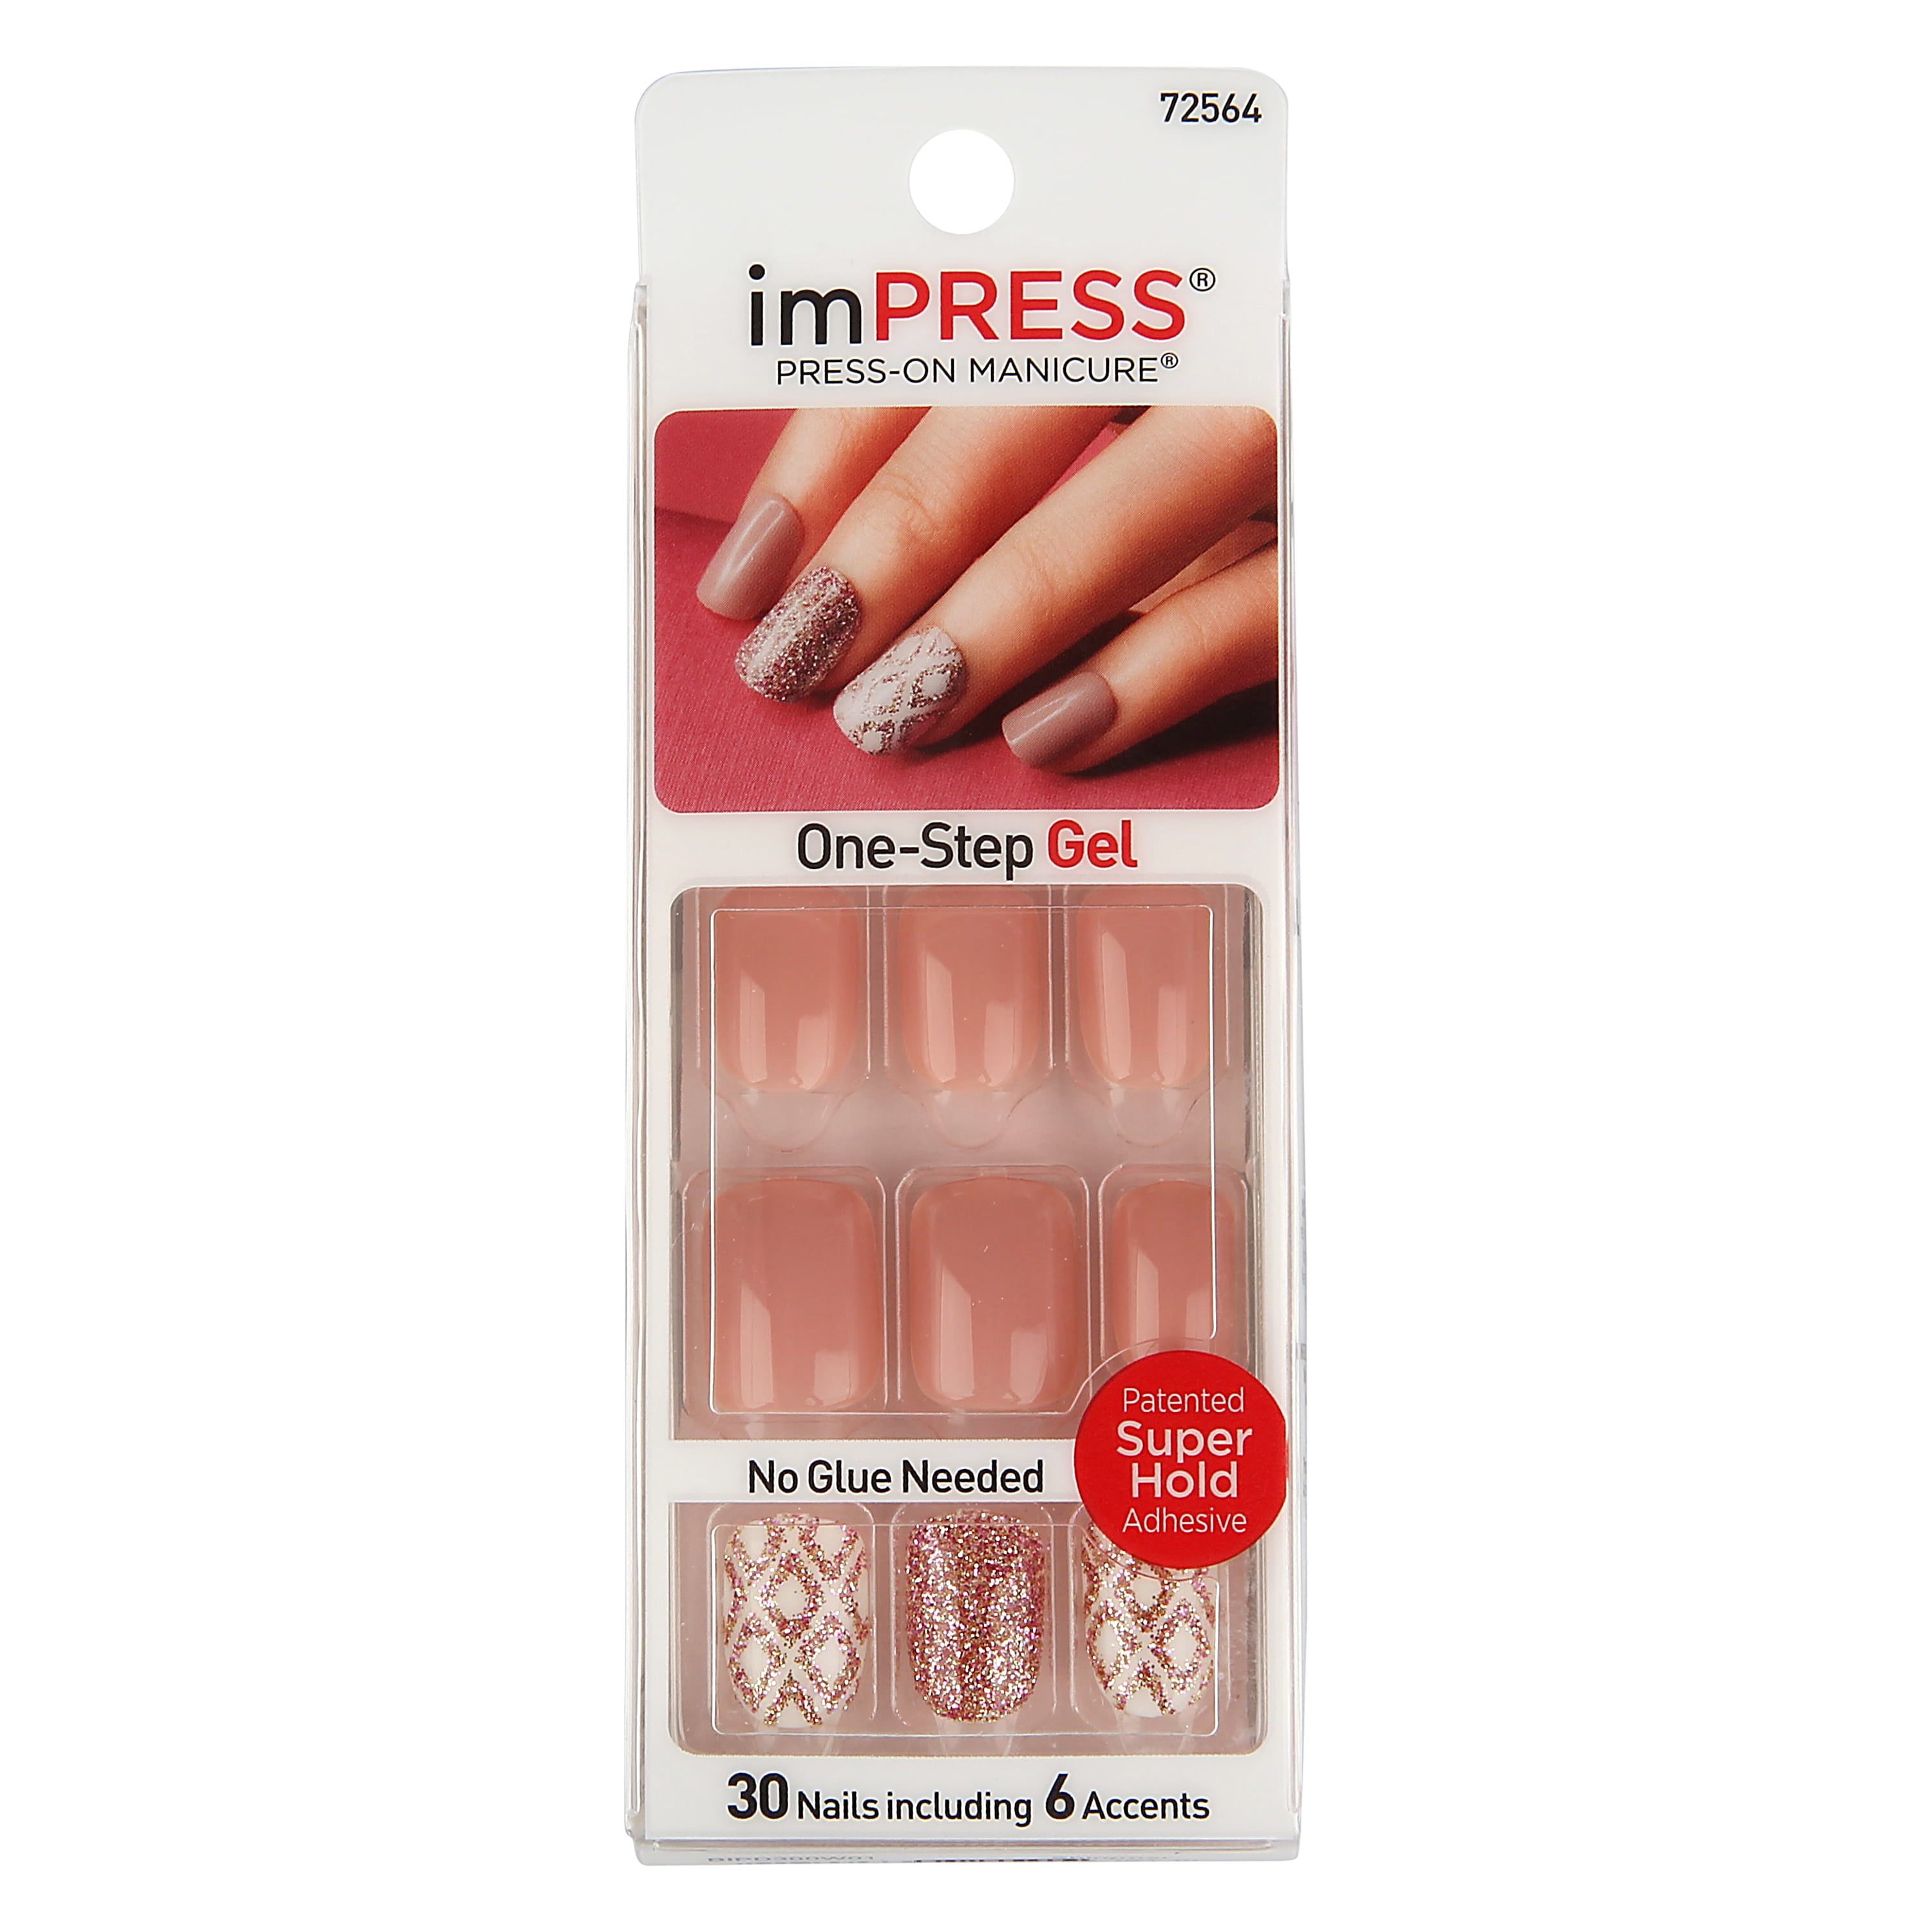 ImPRESS Press-on Nails Gel Manicure - Shimmer 